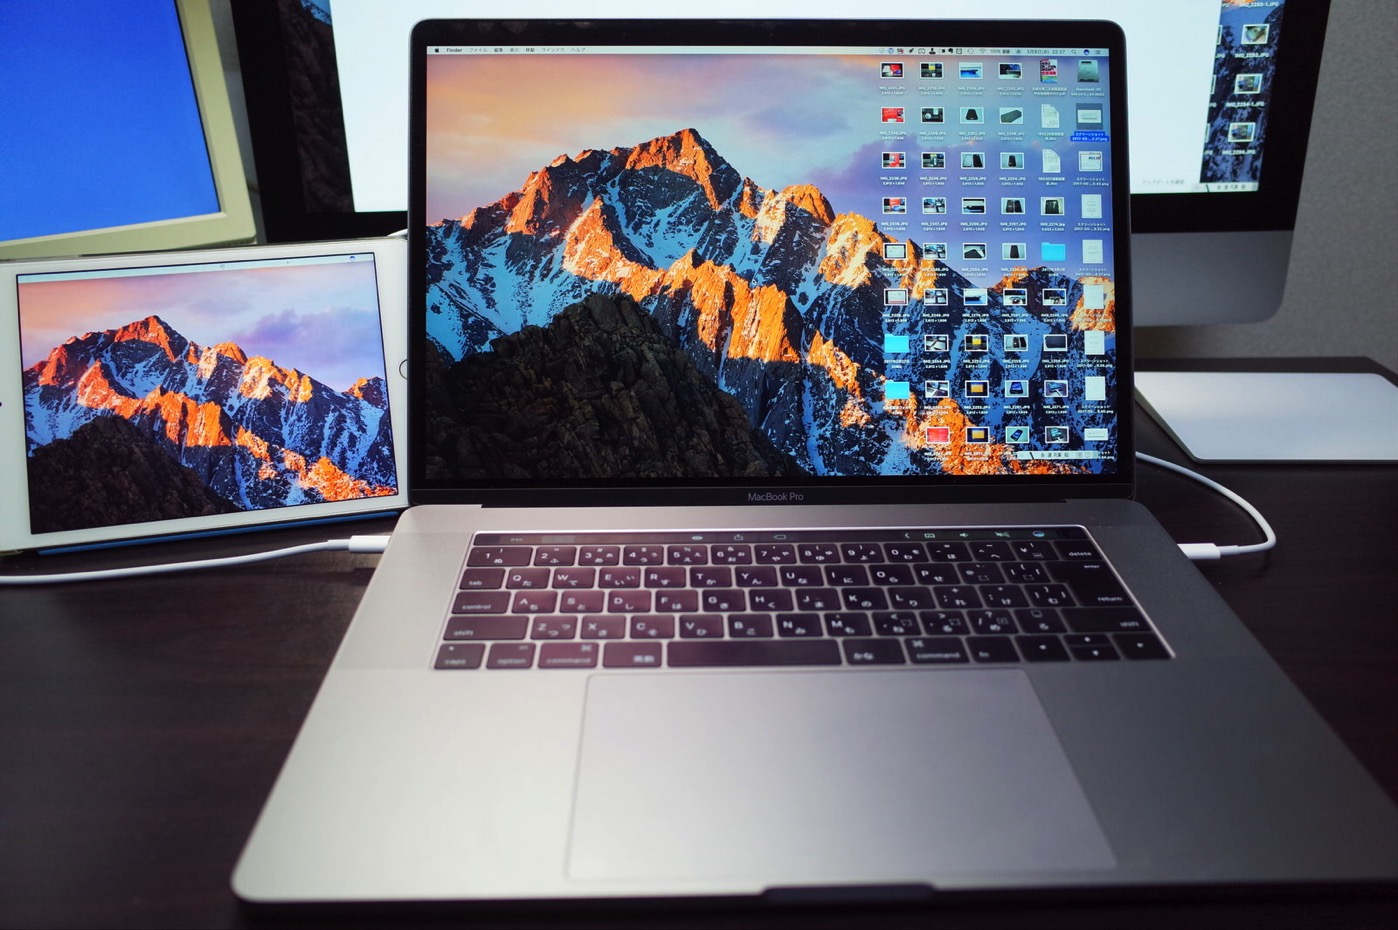 [Mac]iPadやiPhoneなどiOSデバイスをMacのセカンドディスプレイにできるアプリ「Duet Display」を買ってみたよ